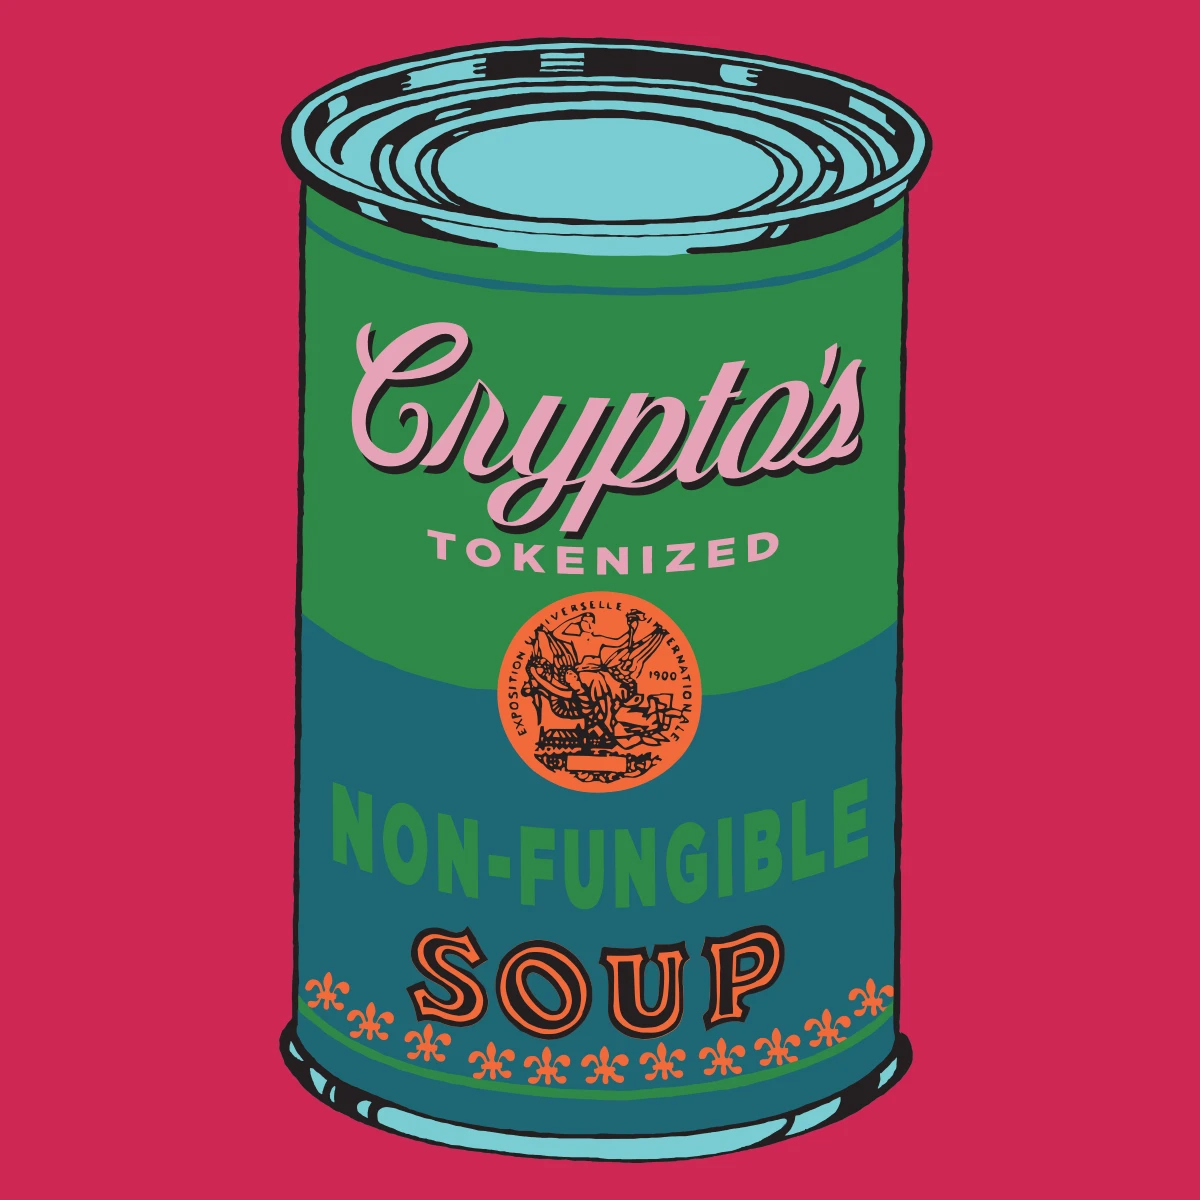 Non-Fungible Soup #1821